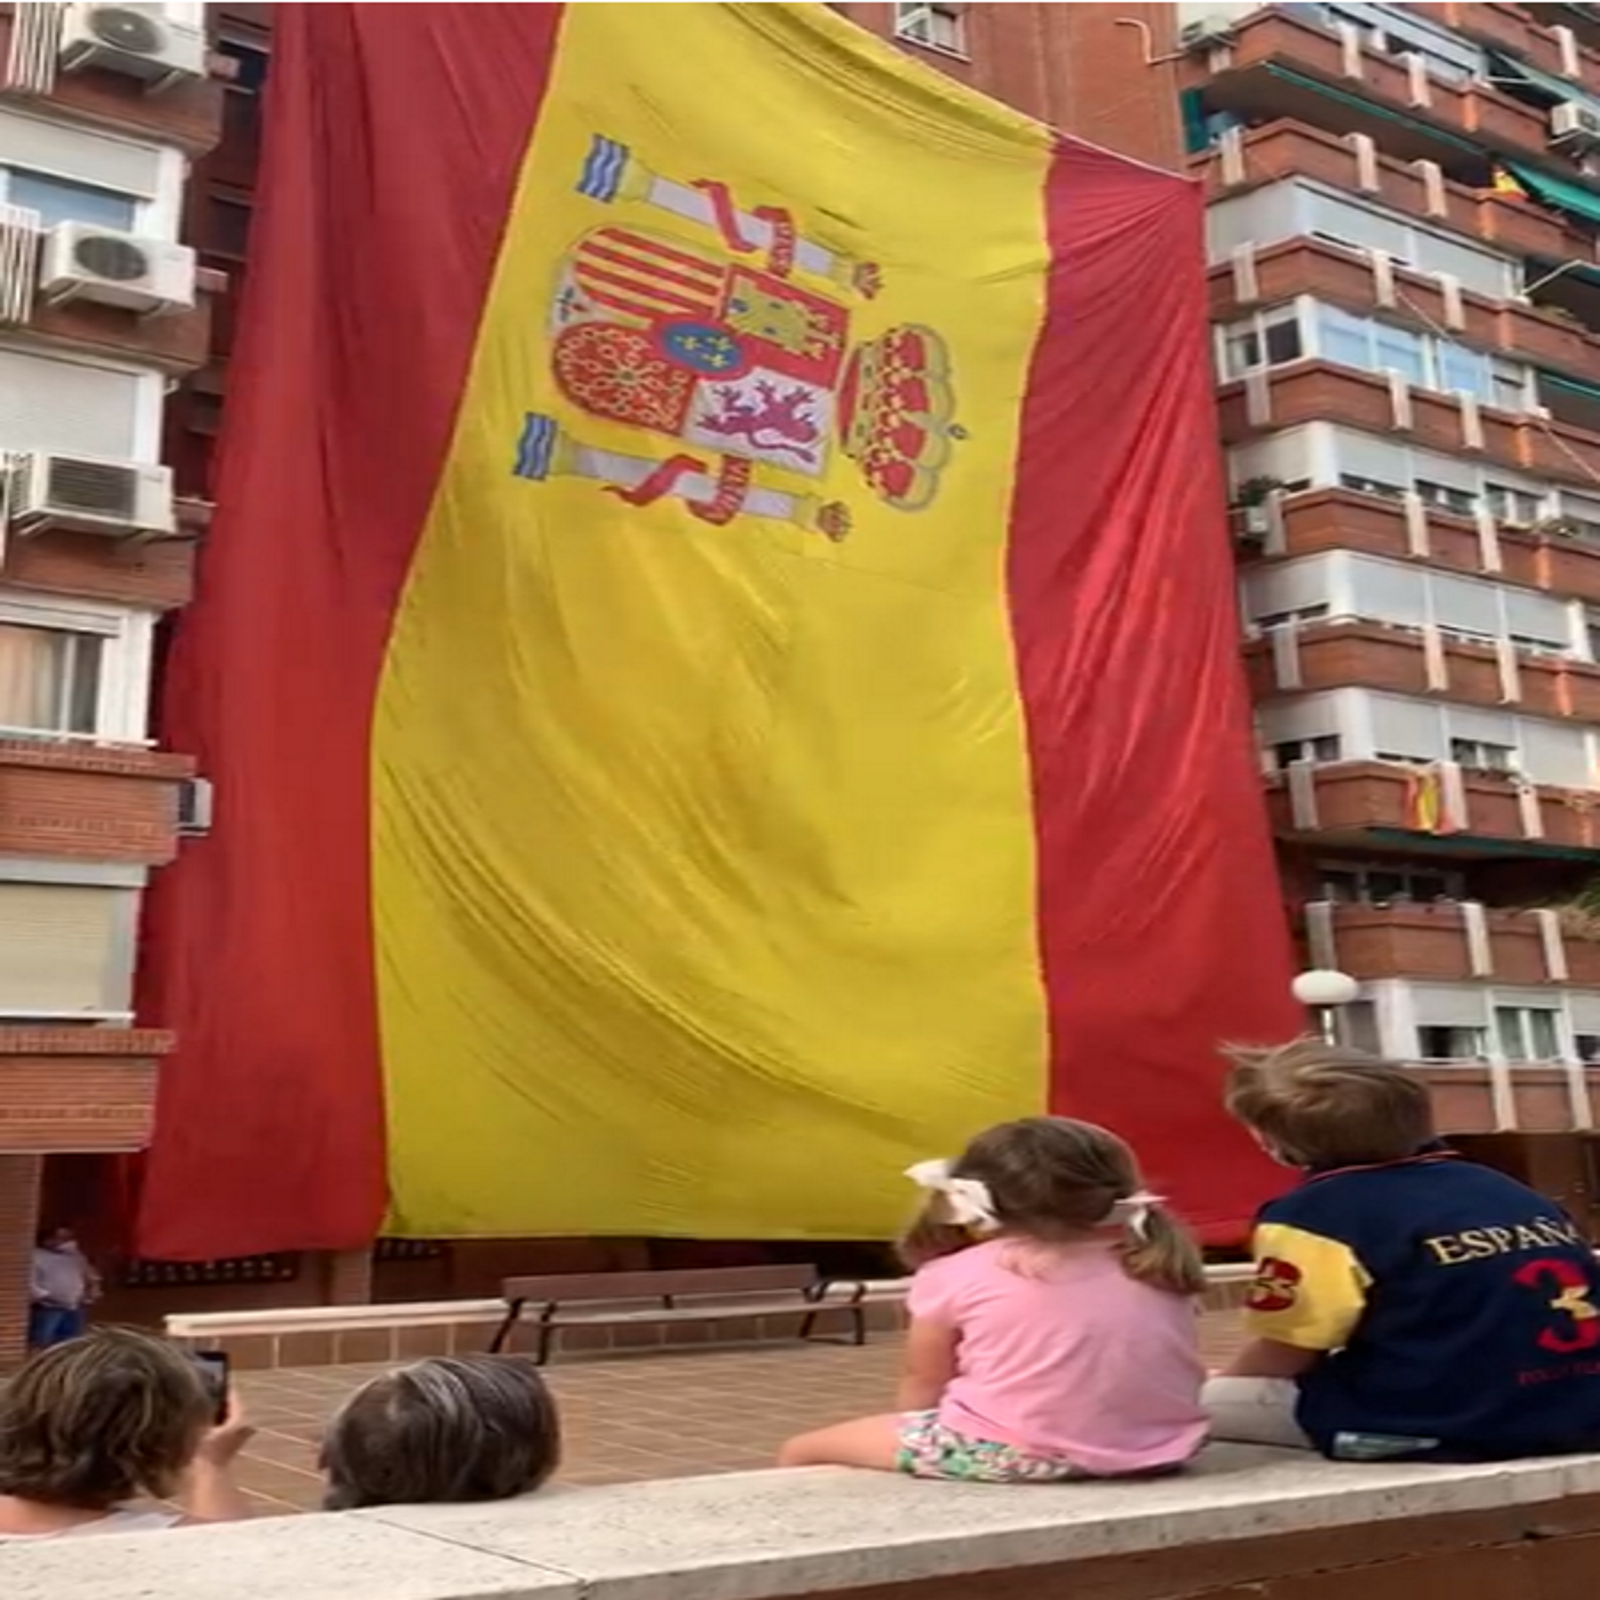 FOTOGRAFÍA. ESPAÑA, 30.05.2020. Día de las Fuerzas Armadas. Un grupo de vecinos celebra el Día de las Fuerzas Armadas izando una gigante bandera. Ñ Pueblo (1)